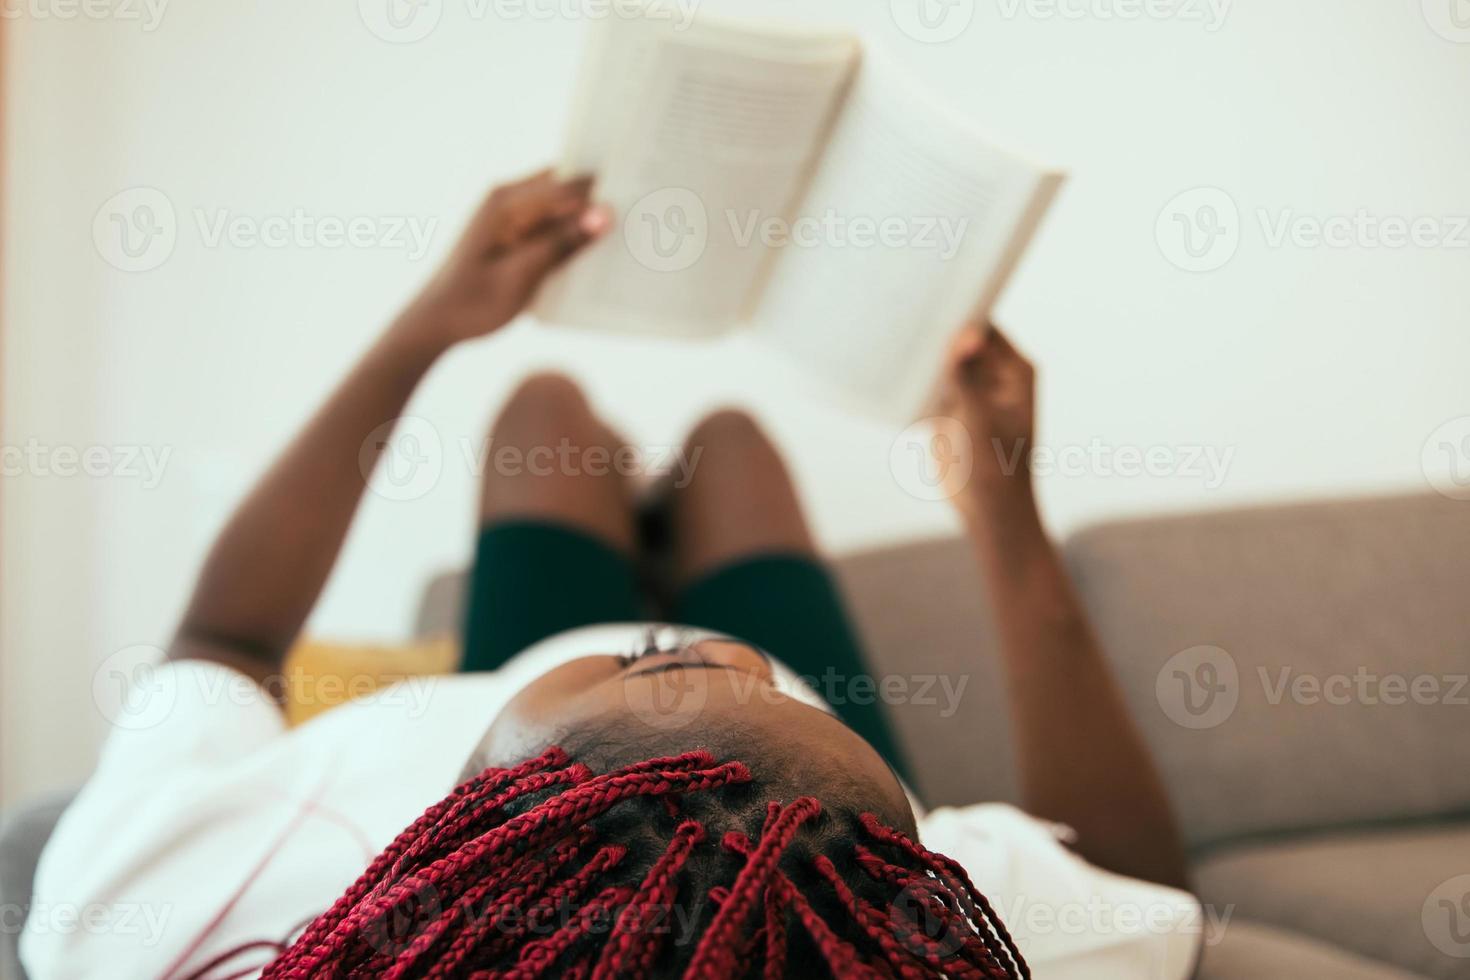 zwarte vrouw die op de bank ligt en een boek leest met zijn voeten op de muur foto